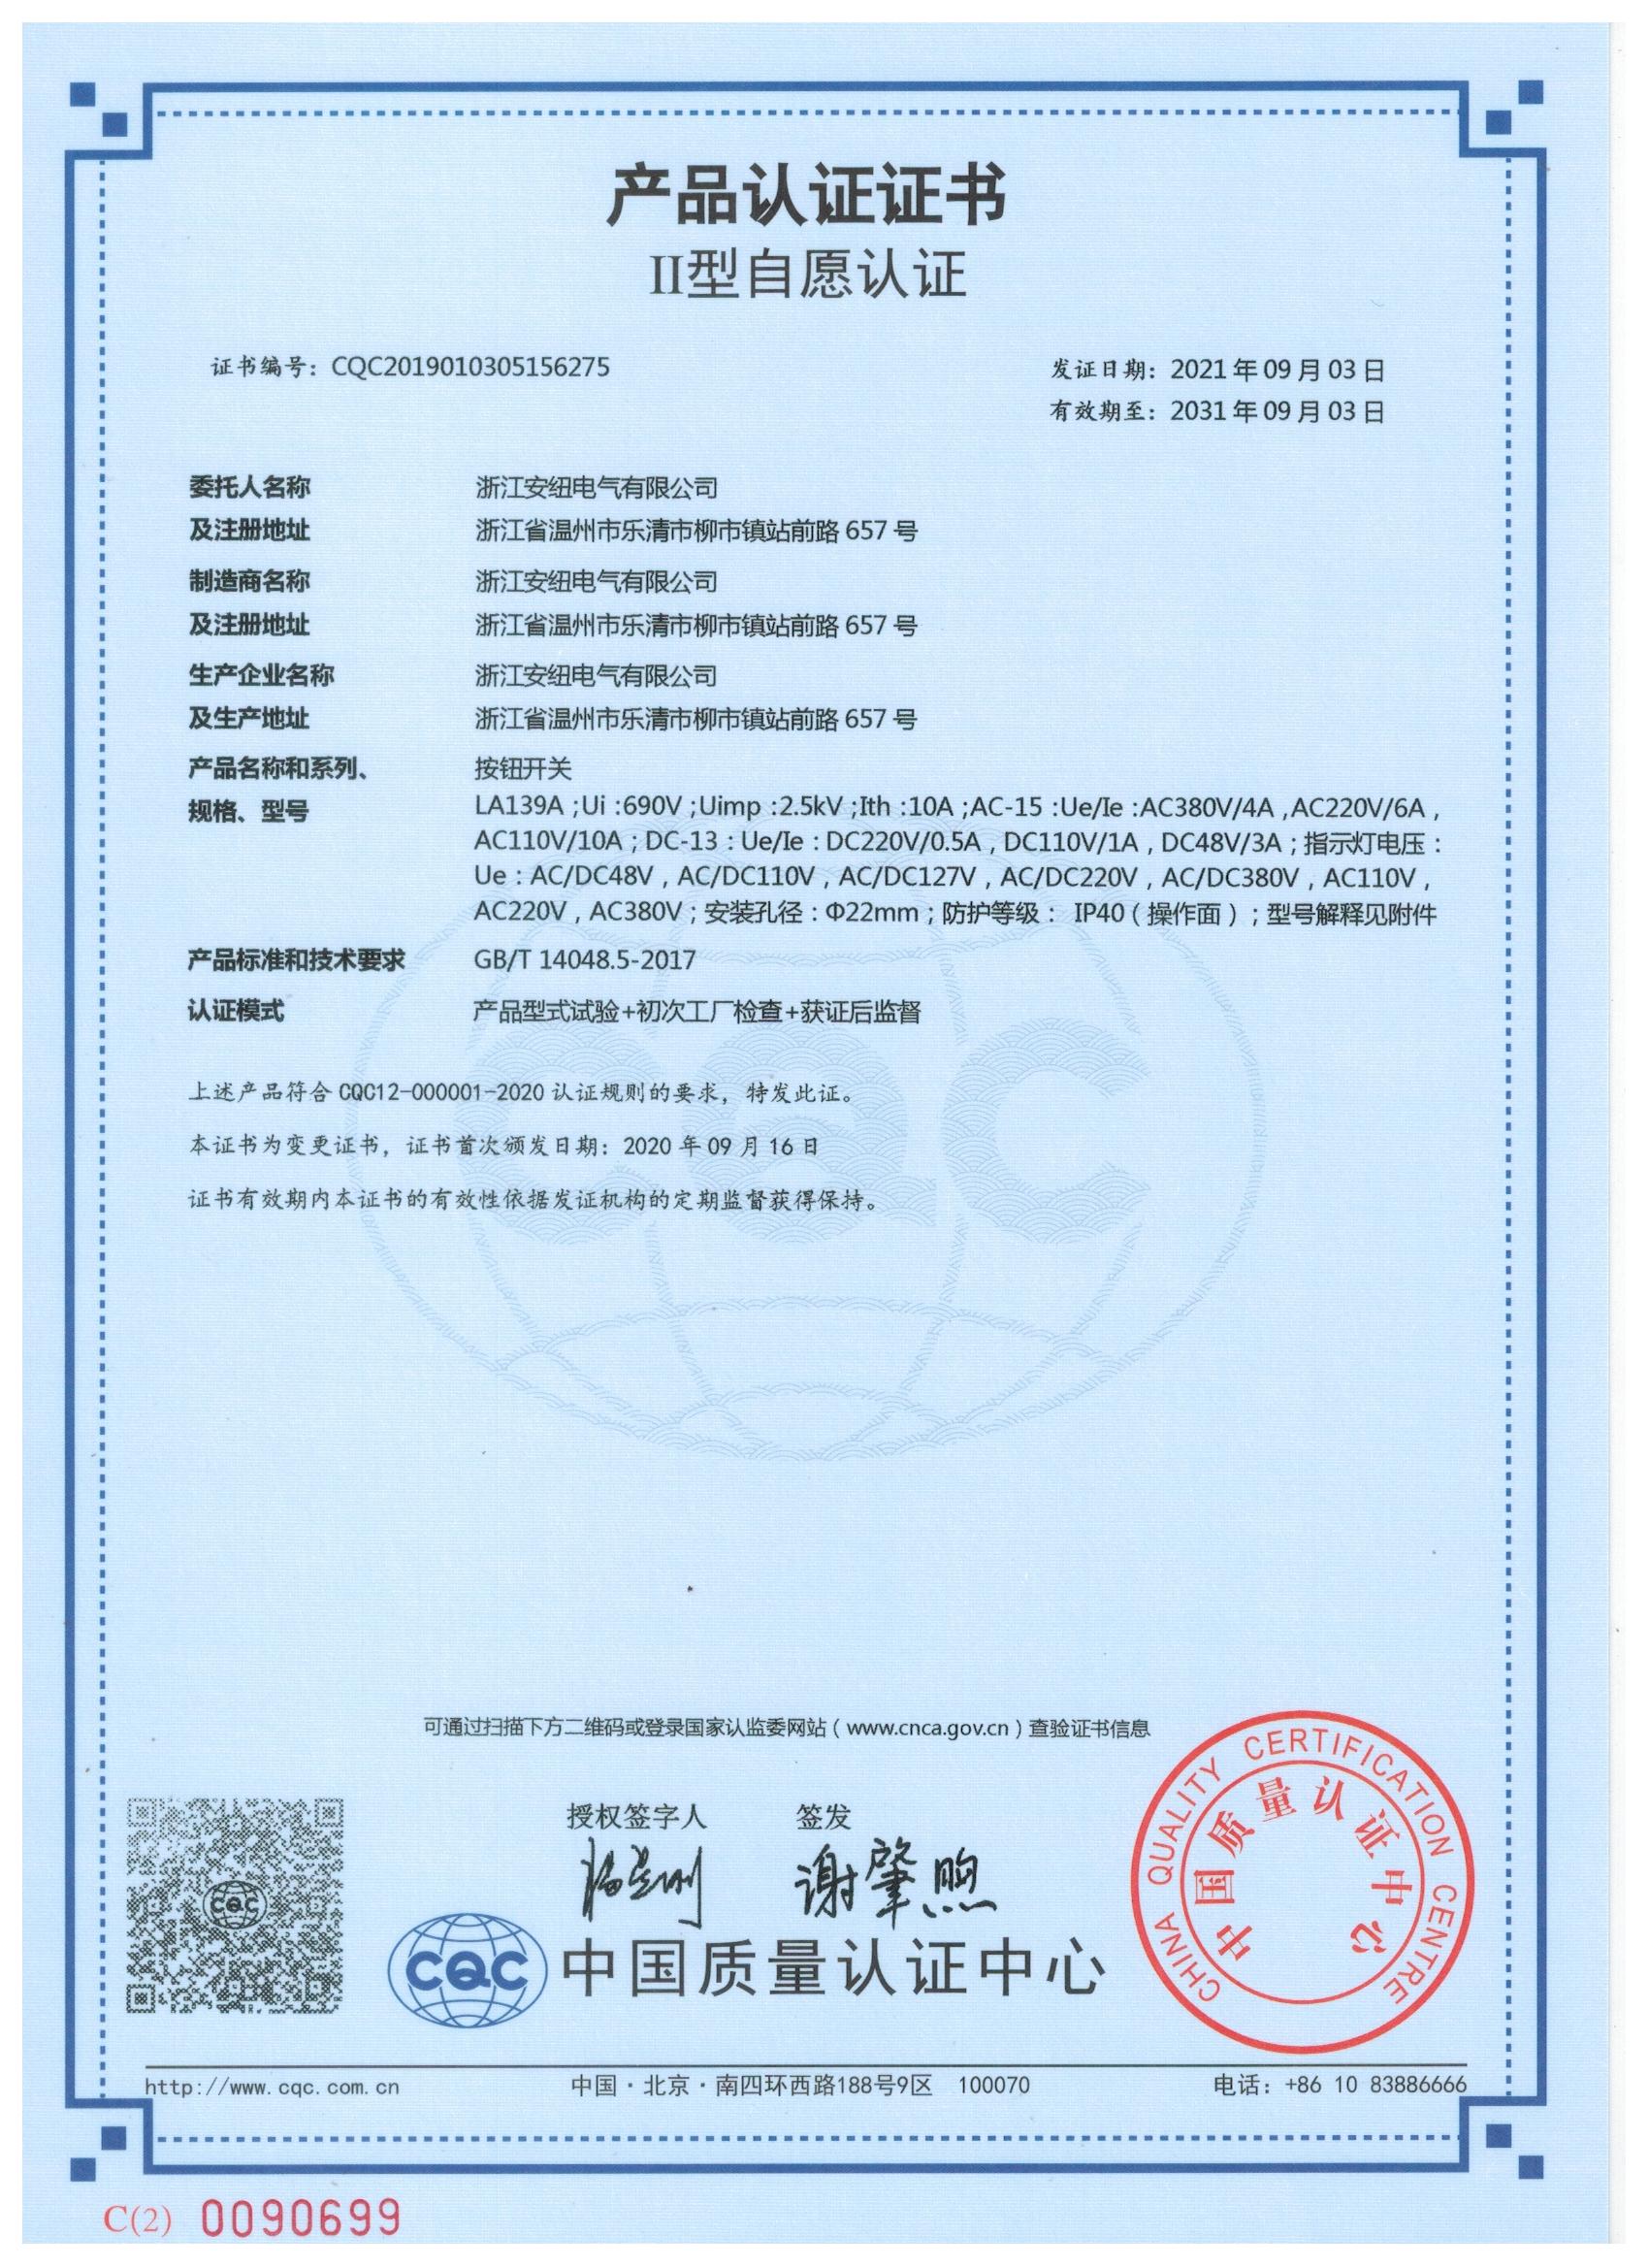 LA139A自愿认证CQC证书